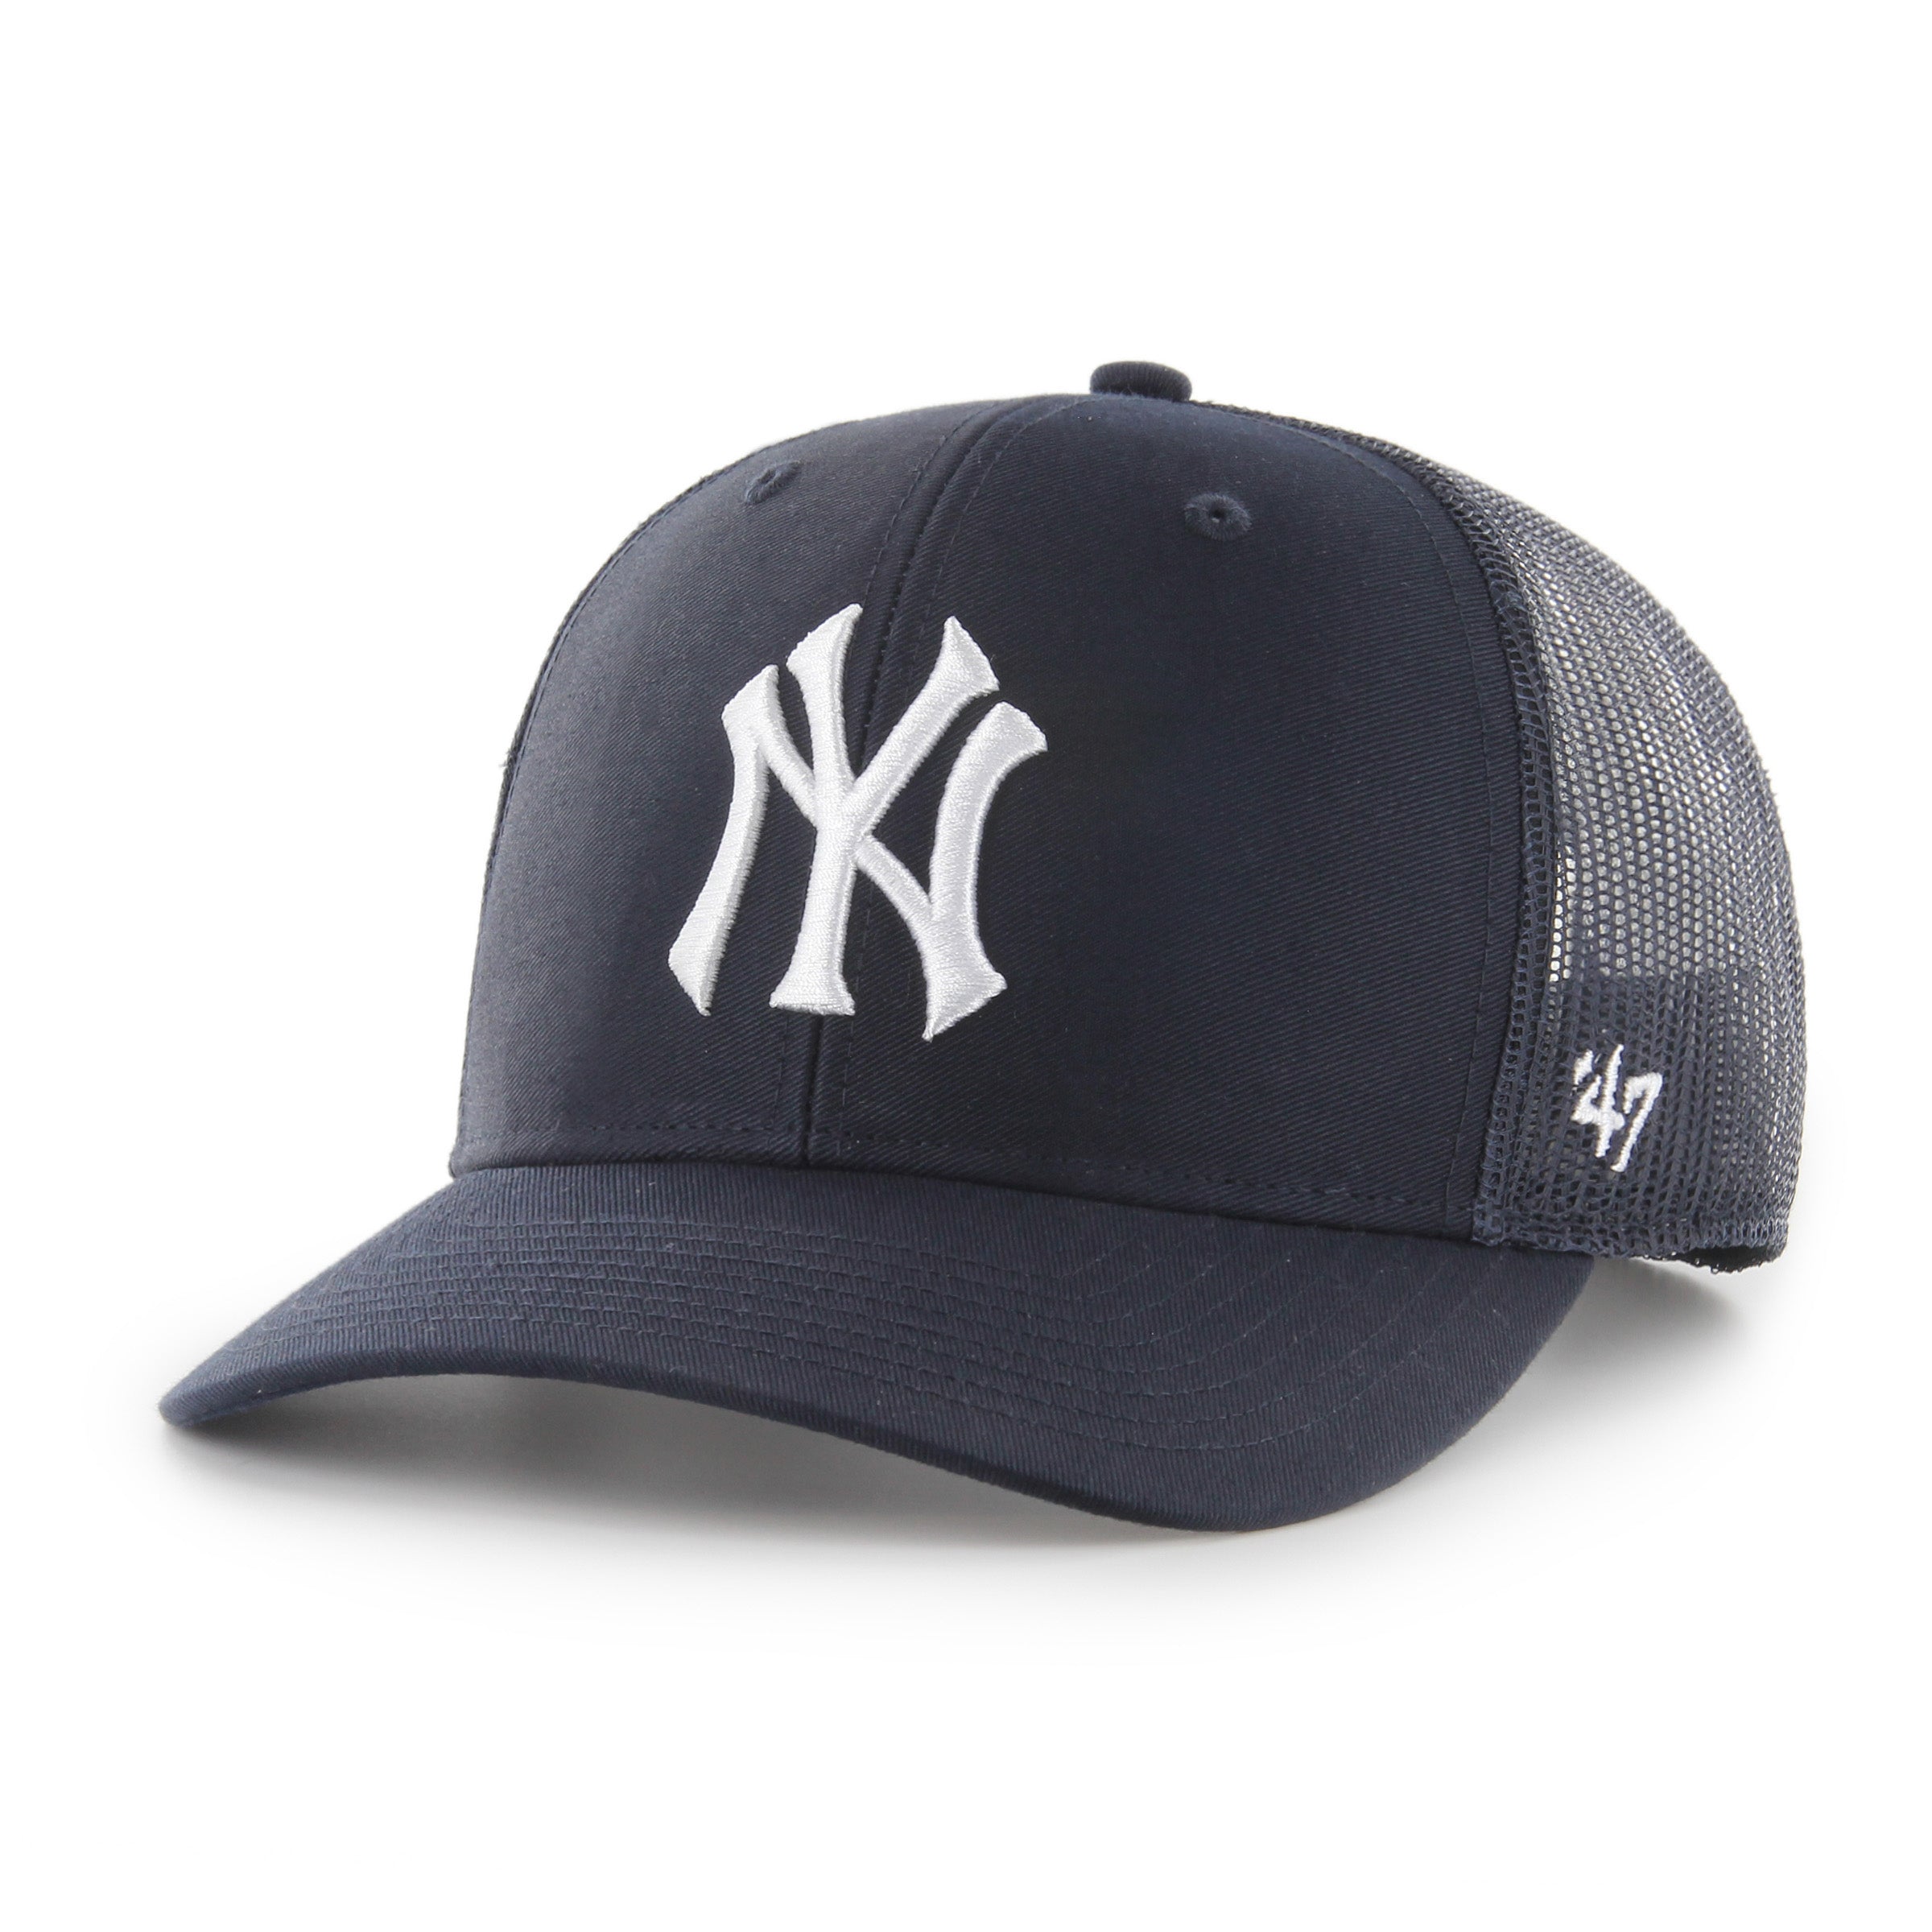 New York Yankees '47 TRUCKER